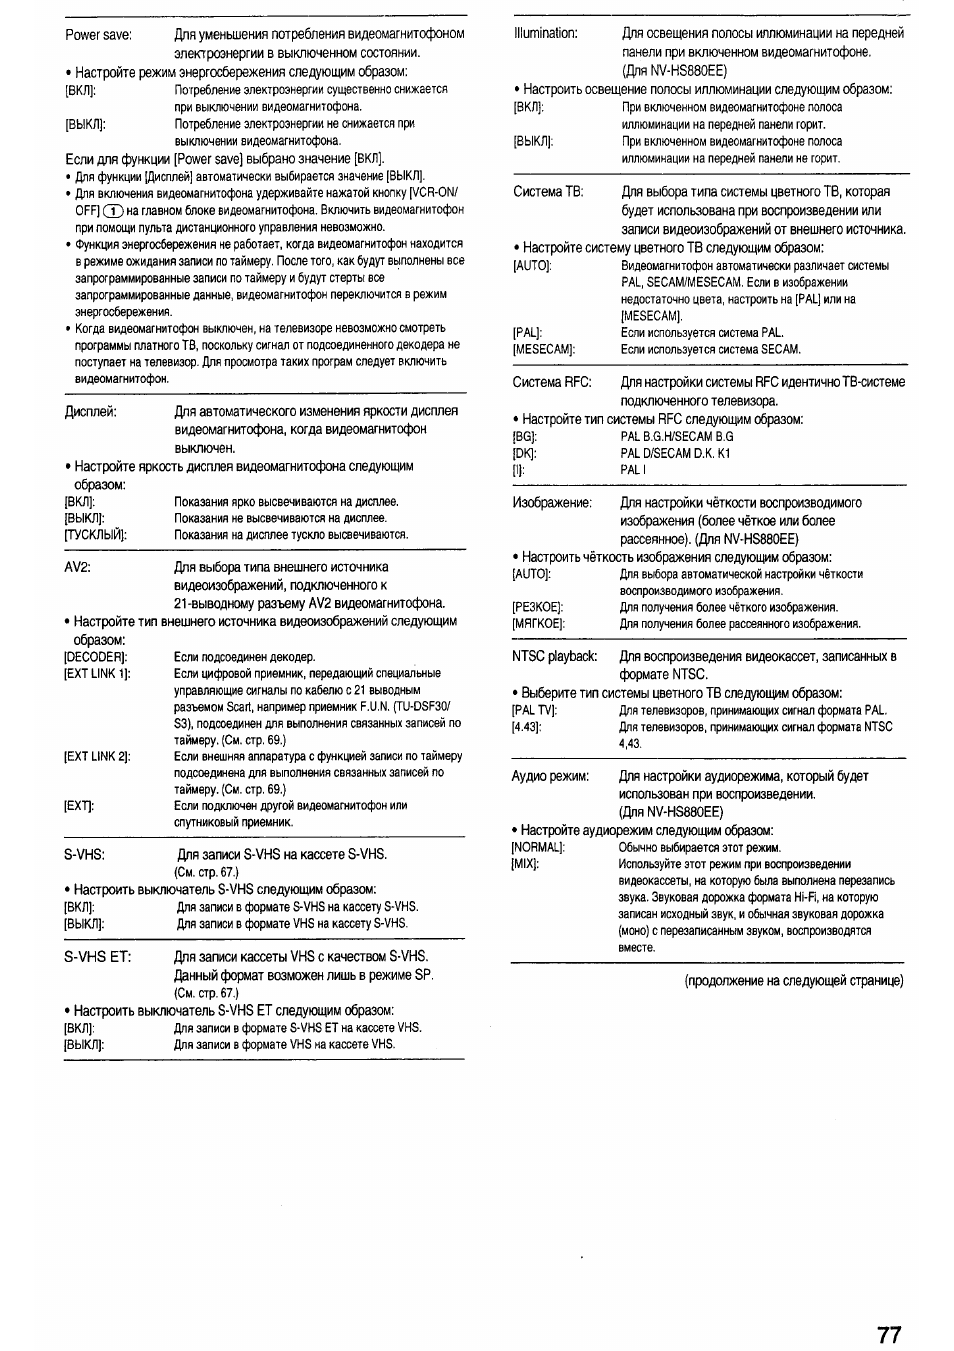 Инструкция по эксплуатации Panasonic NV-HS830EE | Страница 22 / 29